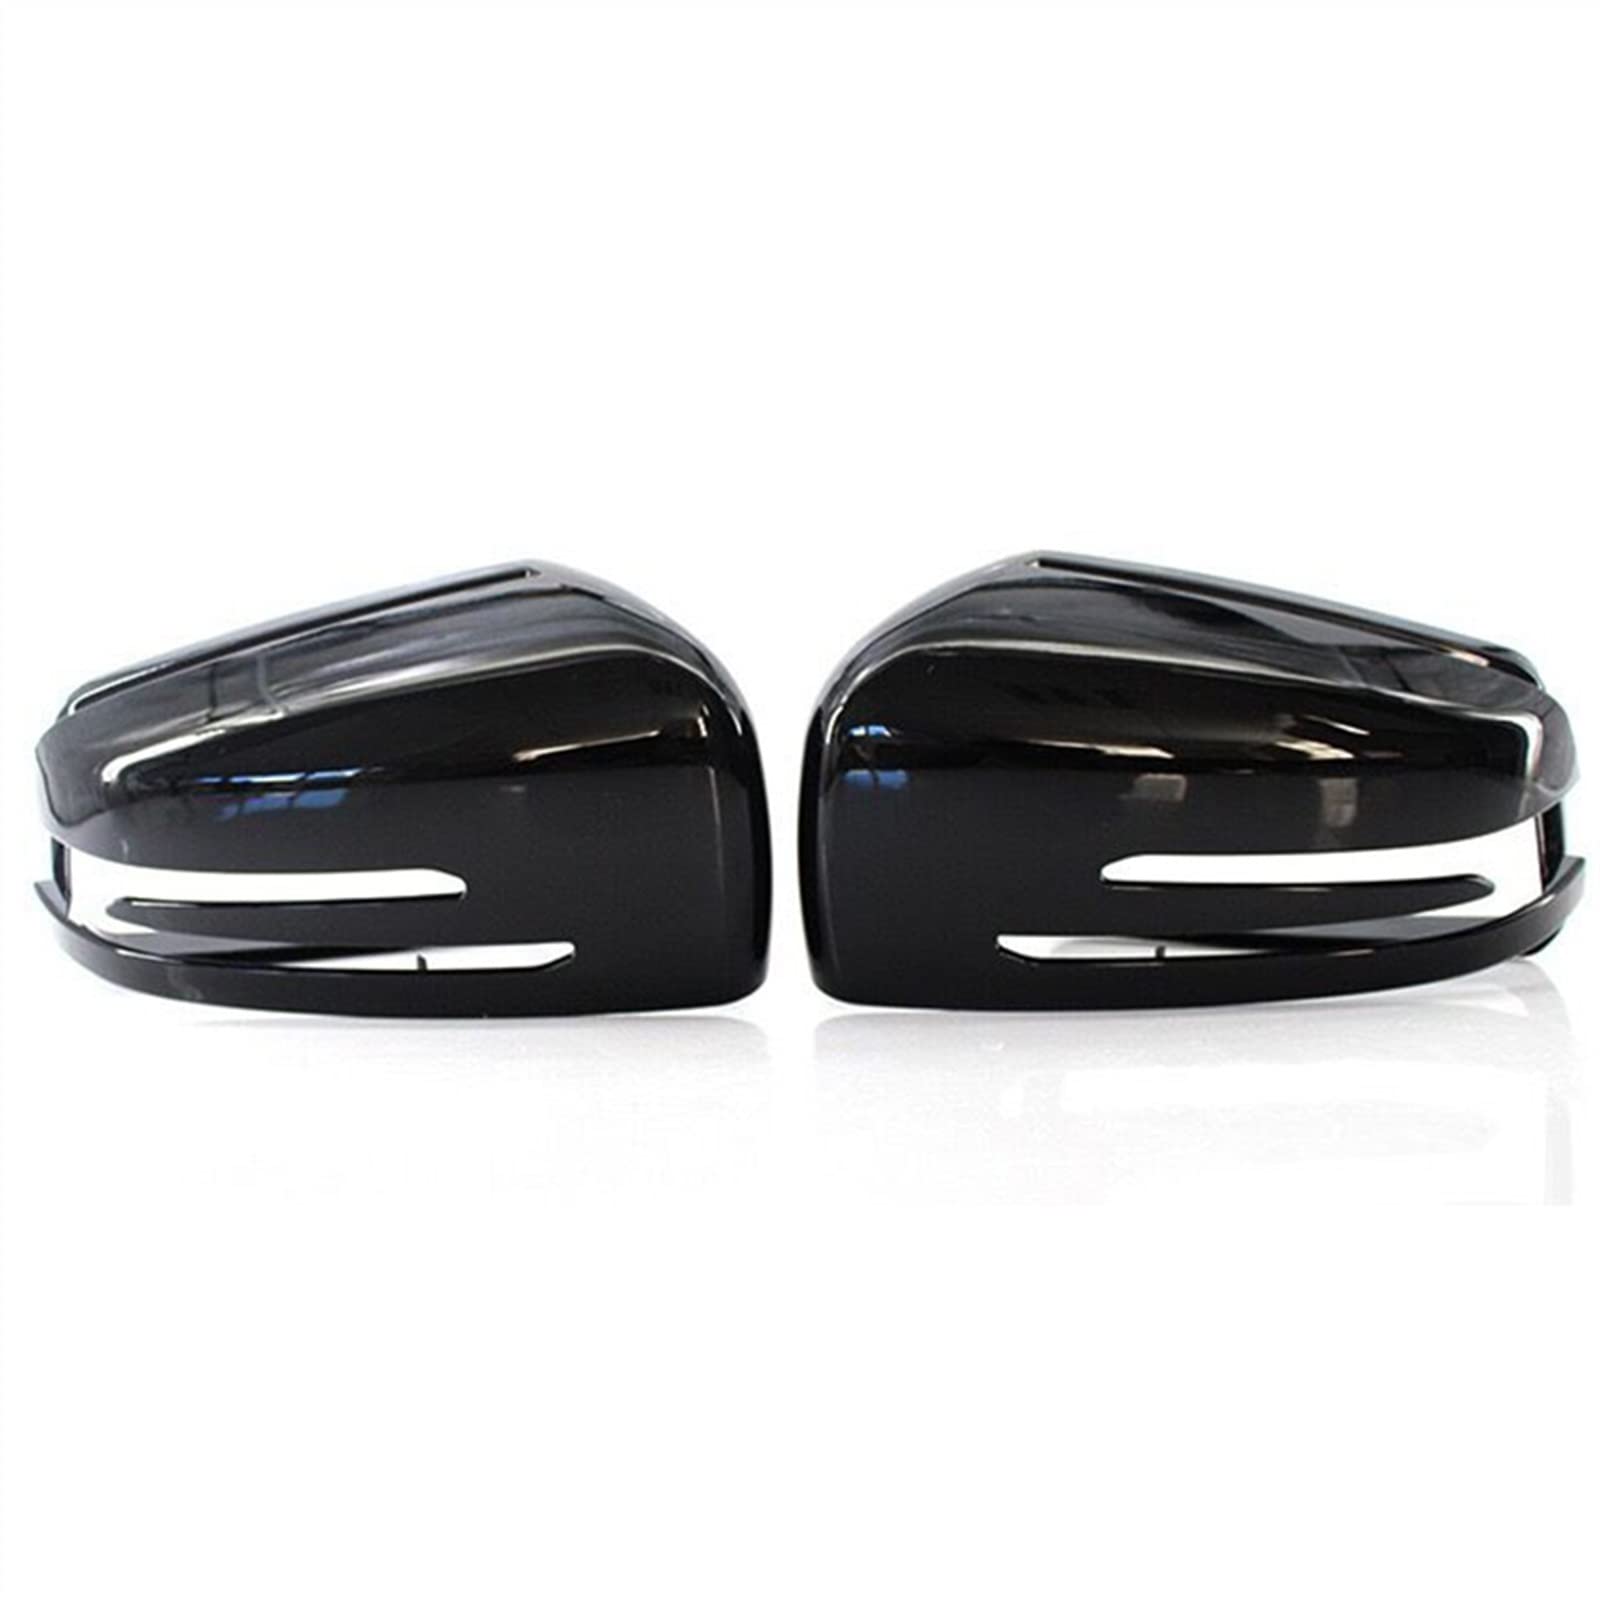 Für Für Benz Für ML-Klasse W166 Für GL X166 Für GLS X166 Für GLE W166 / Für GLE Für Coupe C292 Seitenrückspiegelabdeckung Spiegelkappen Seitenspiegelkappe (Farbe : 1 pair black) von qizhoubaihuo